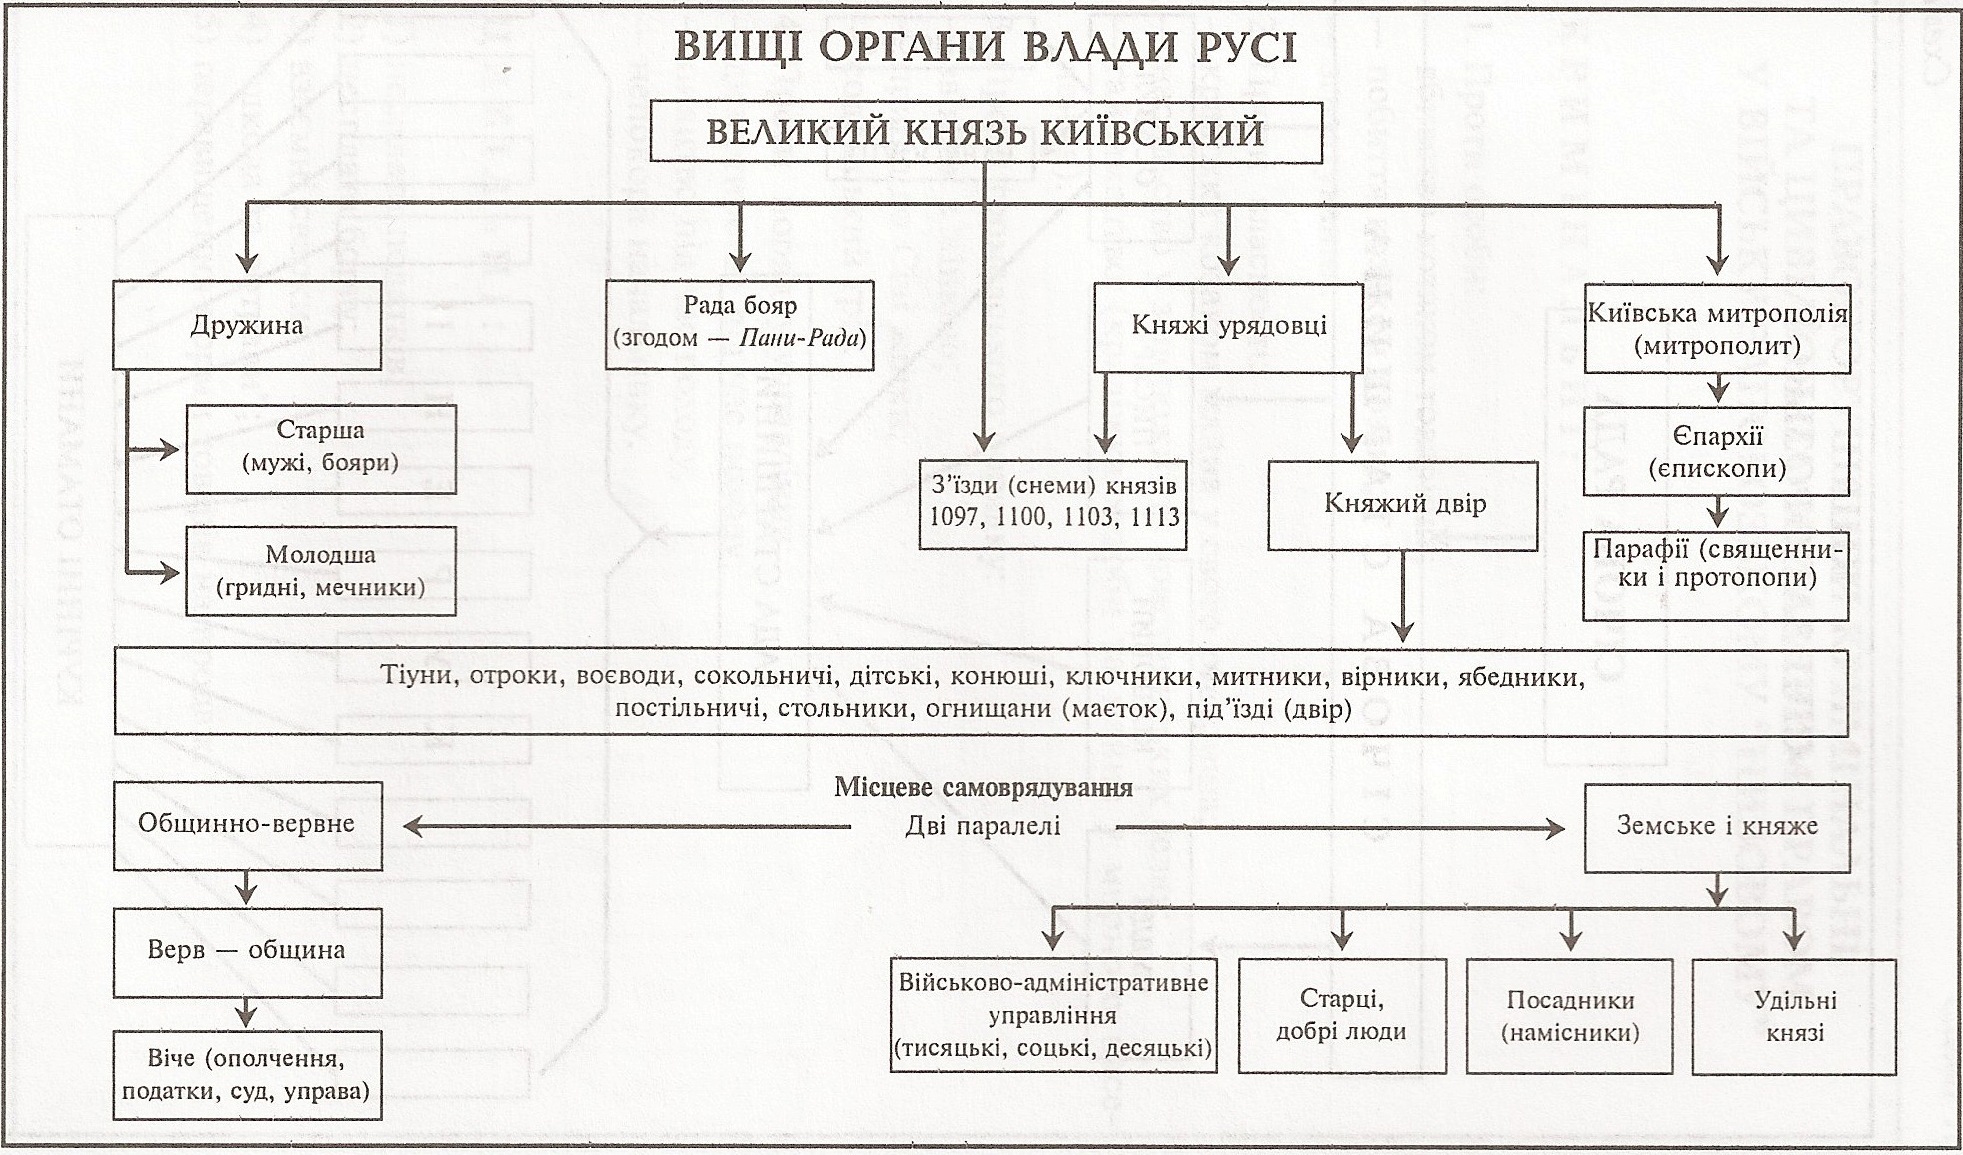 Таблиця: Вищі органи влади Русі 